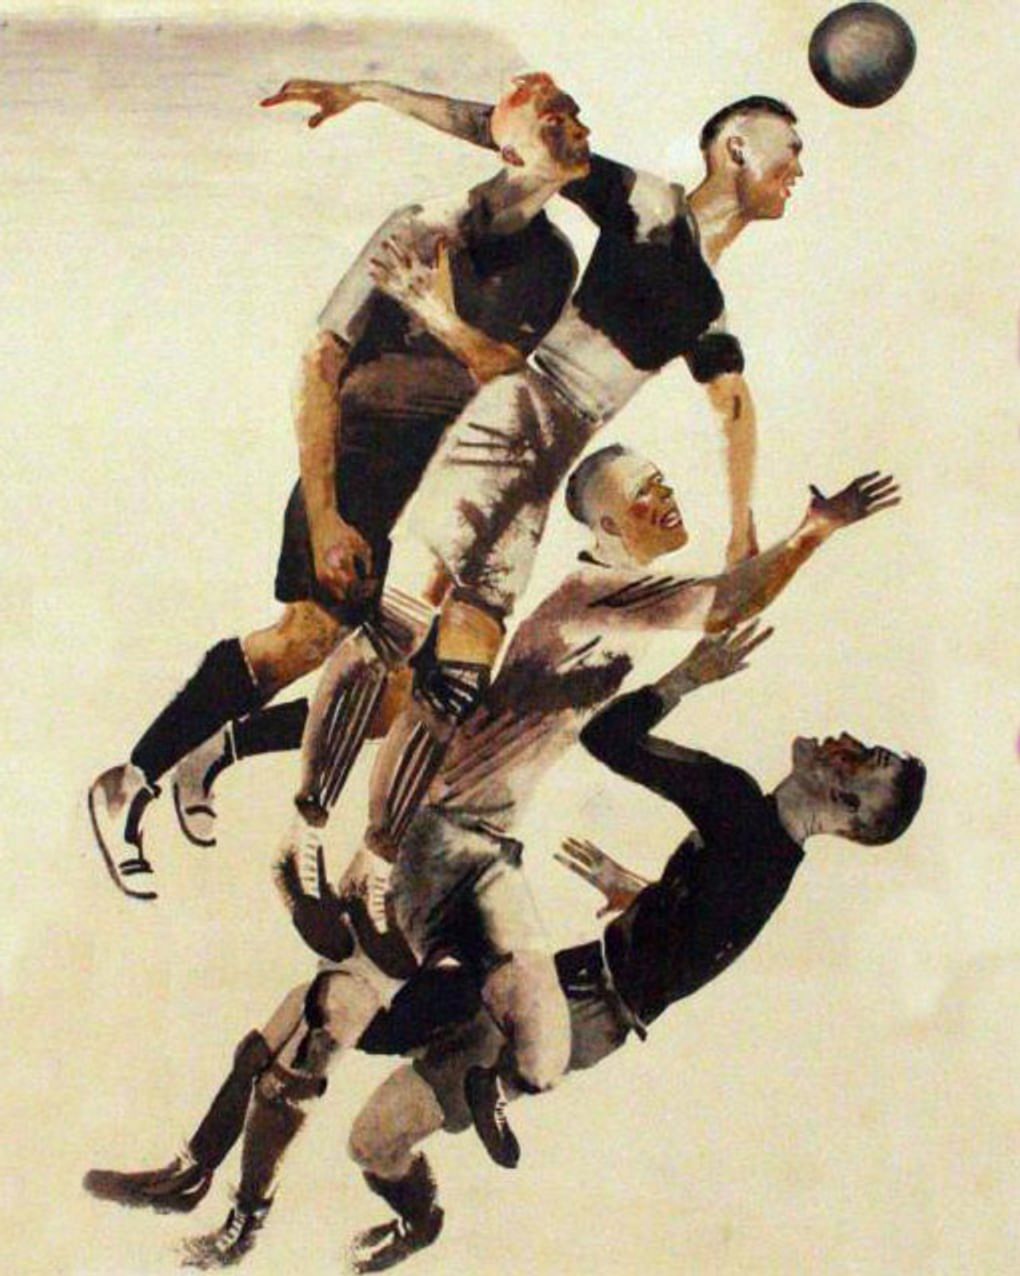 Александр Дейнека. Футбол (фрагмент). 1928. Ивановский областной художественный музей, Иваново